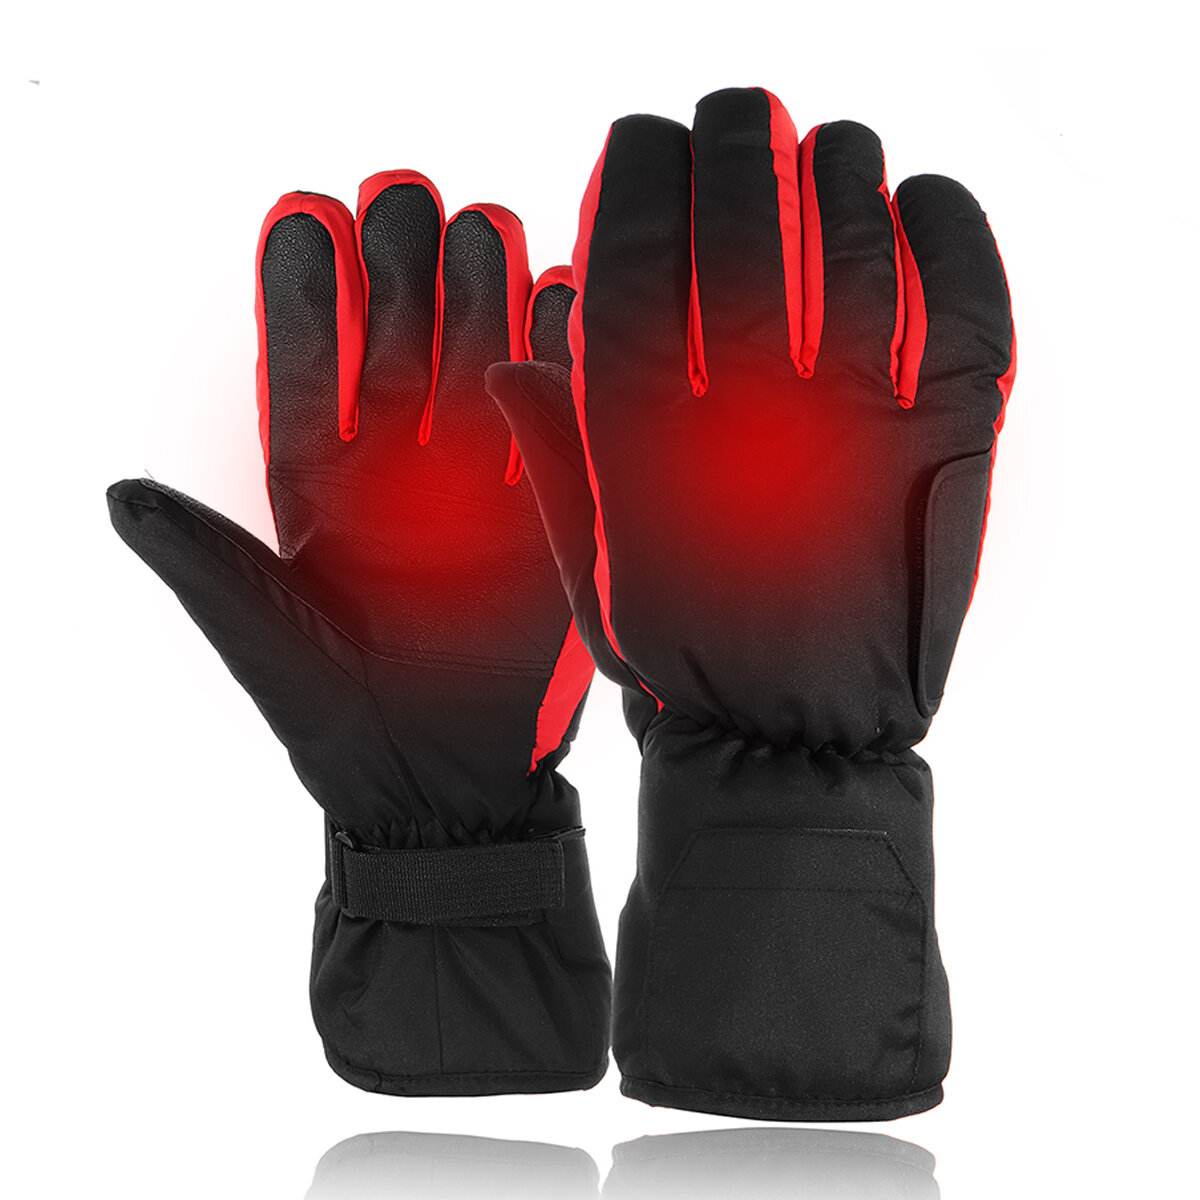 Podgrzewane rękawiczki Electric Heated Gloves za $14.28 / ~54zł